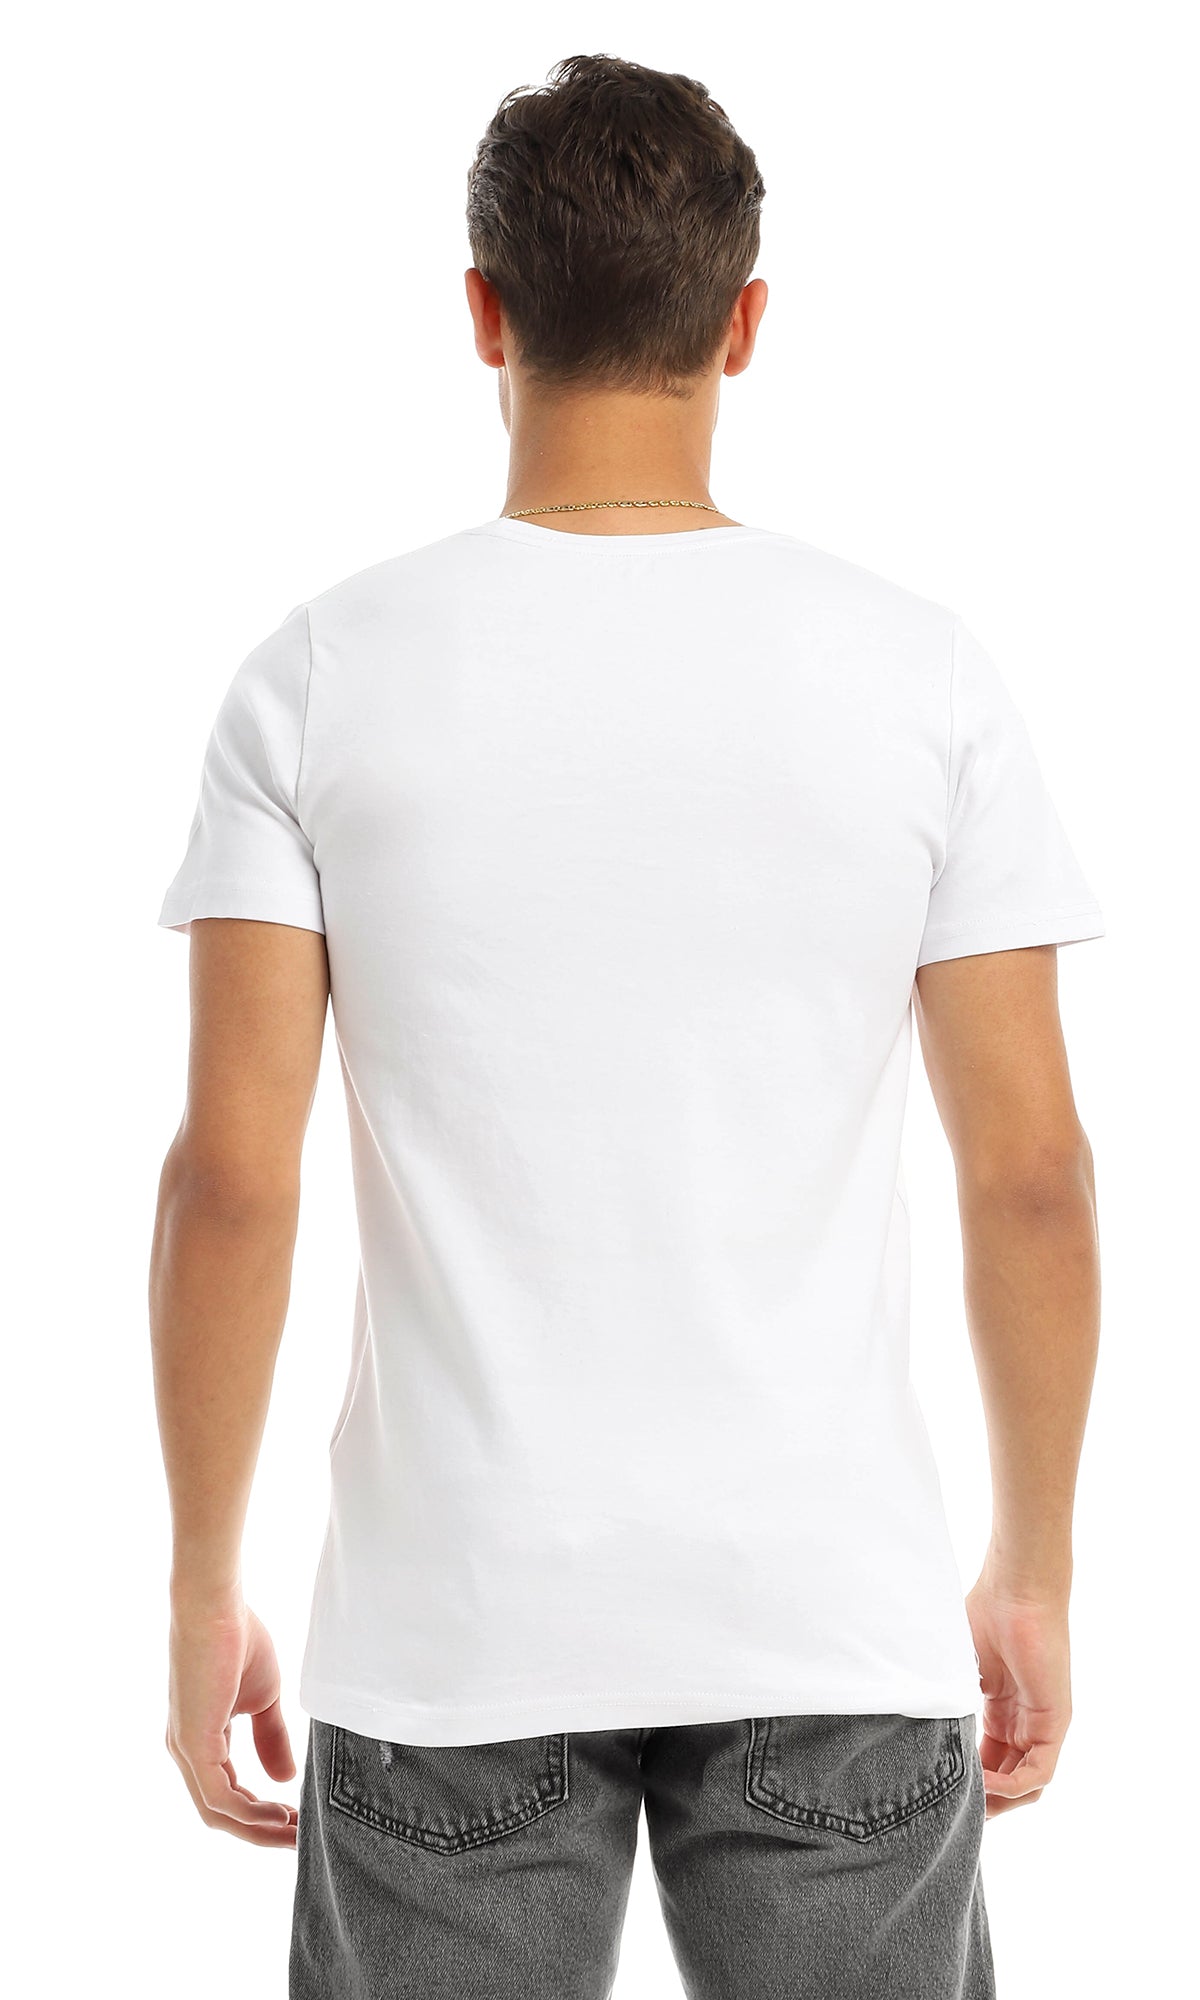 97408 "Black Adam" Printed Round White T-Shirt